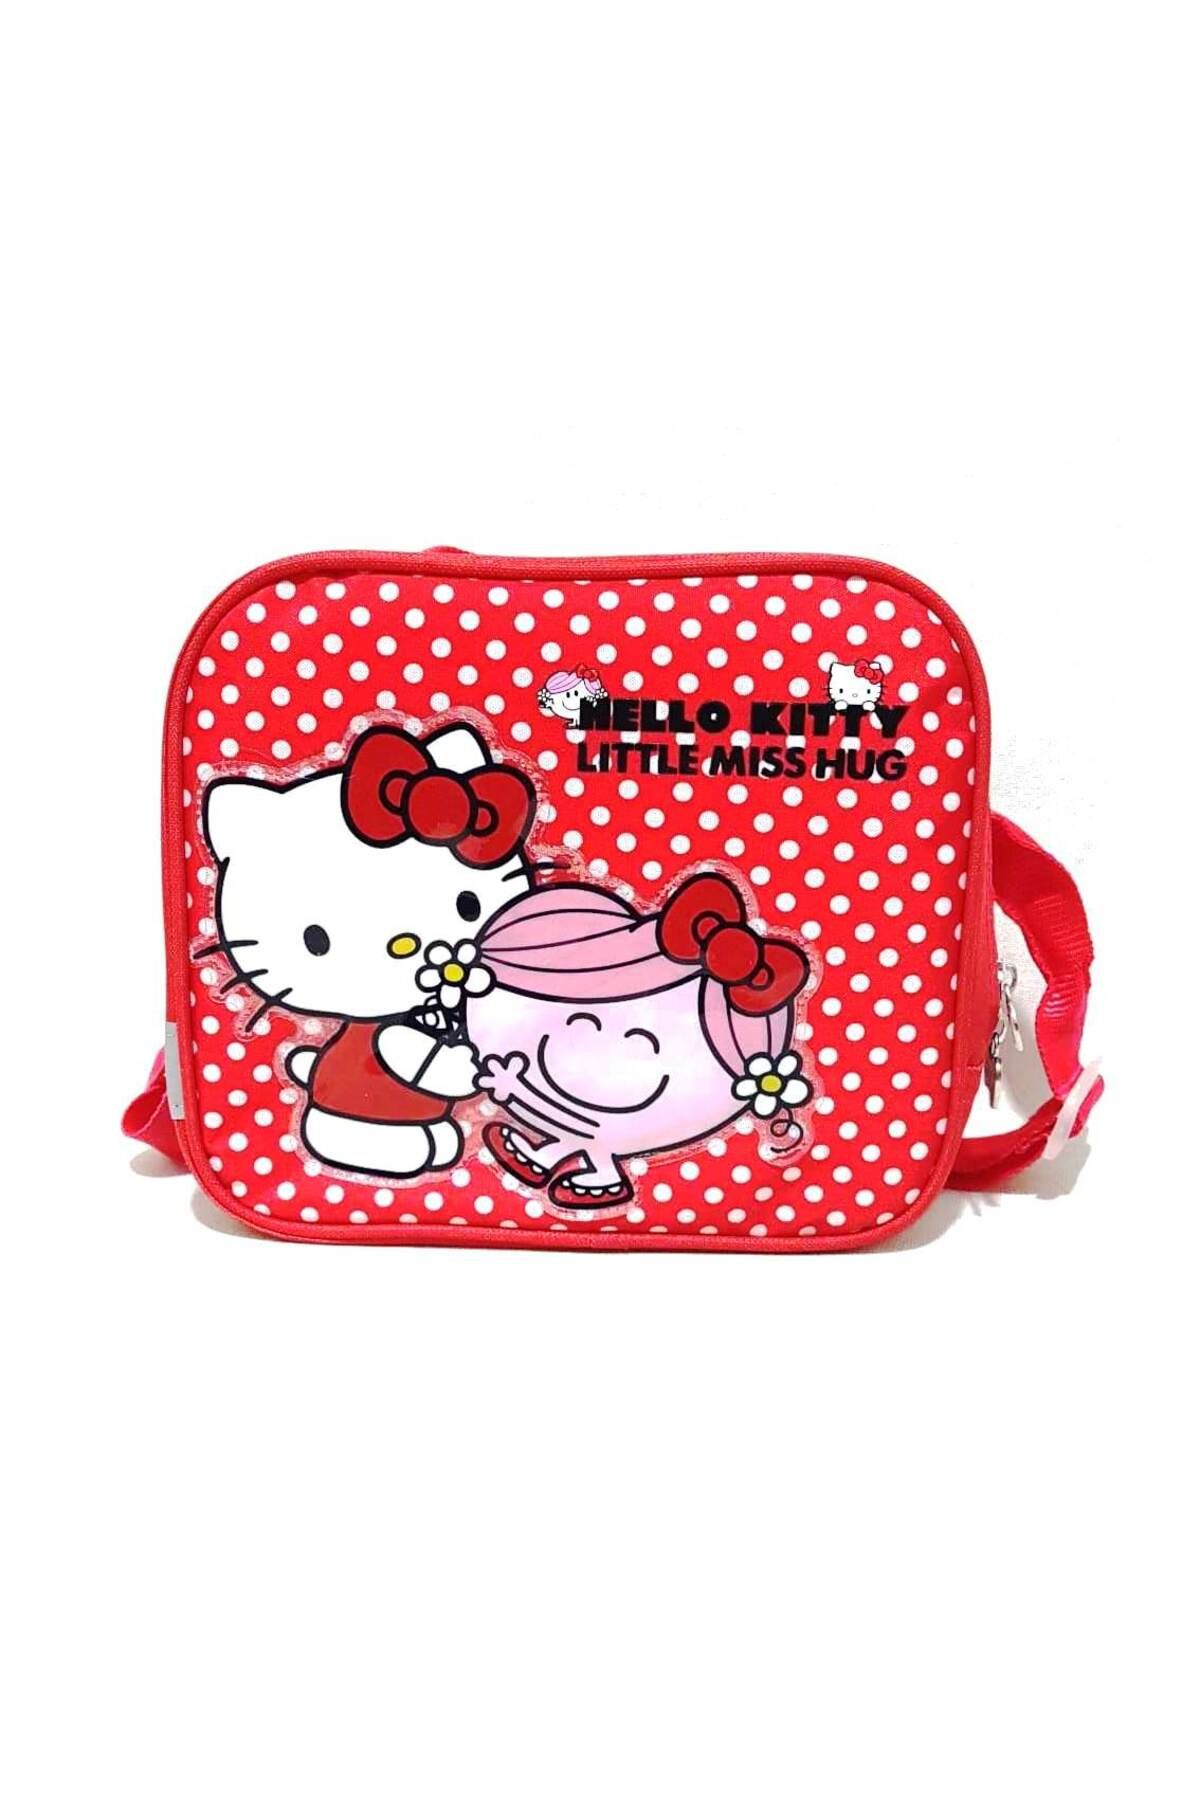 Hakan Çanta Hello Kitty Beslenme Çantası Kırmızı 84787